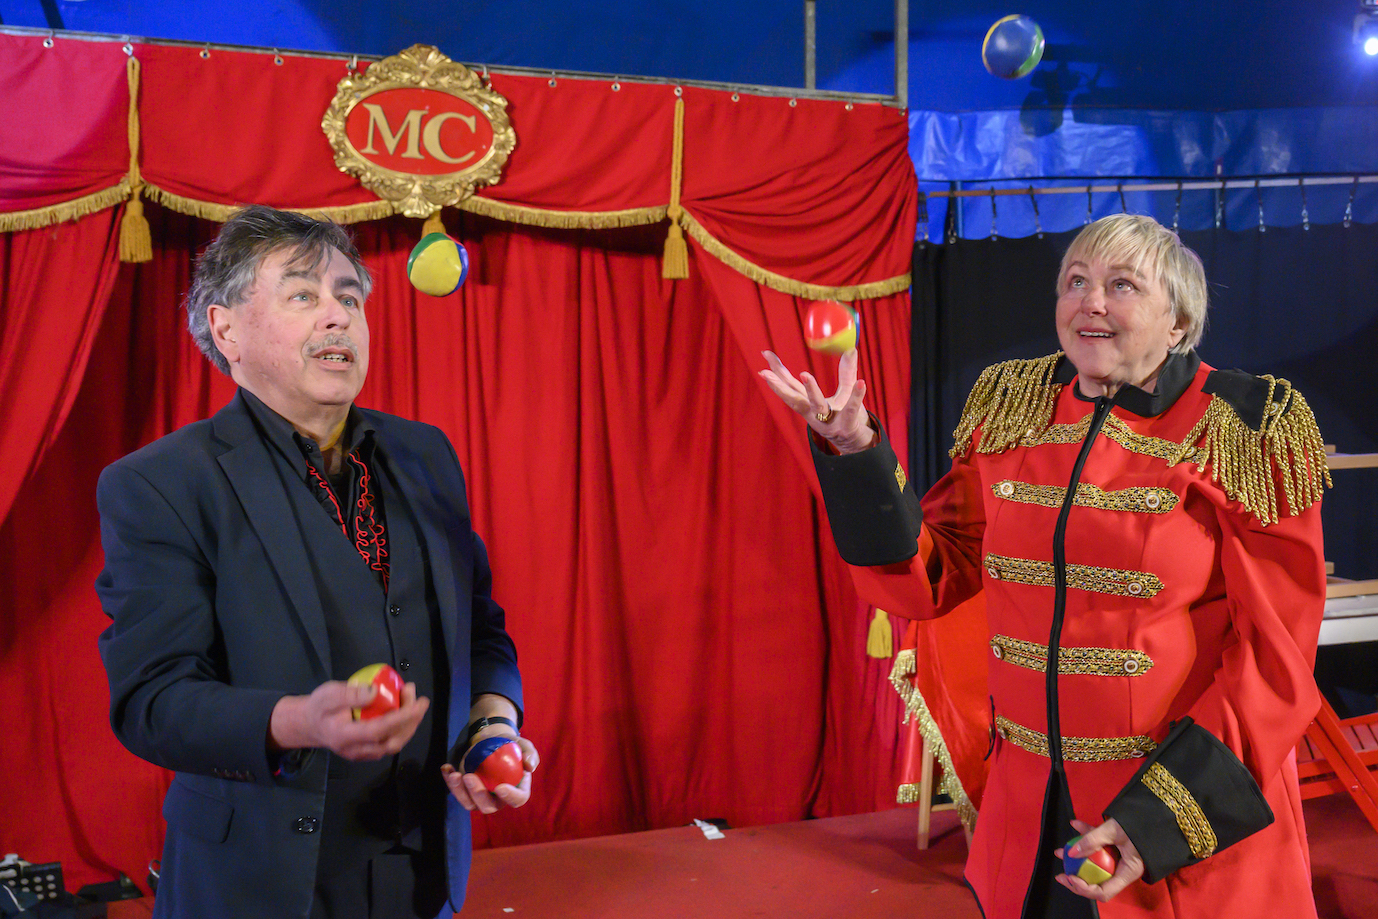 Circusdirecteur leert na 35 jaar zelf óók jongleren